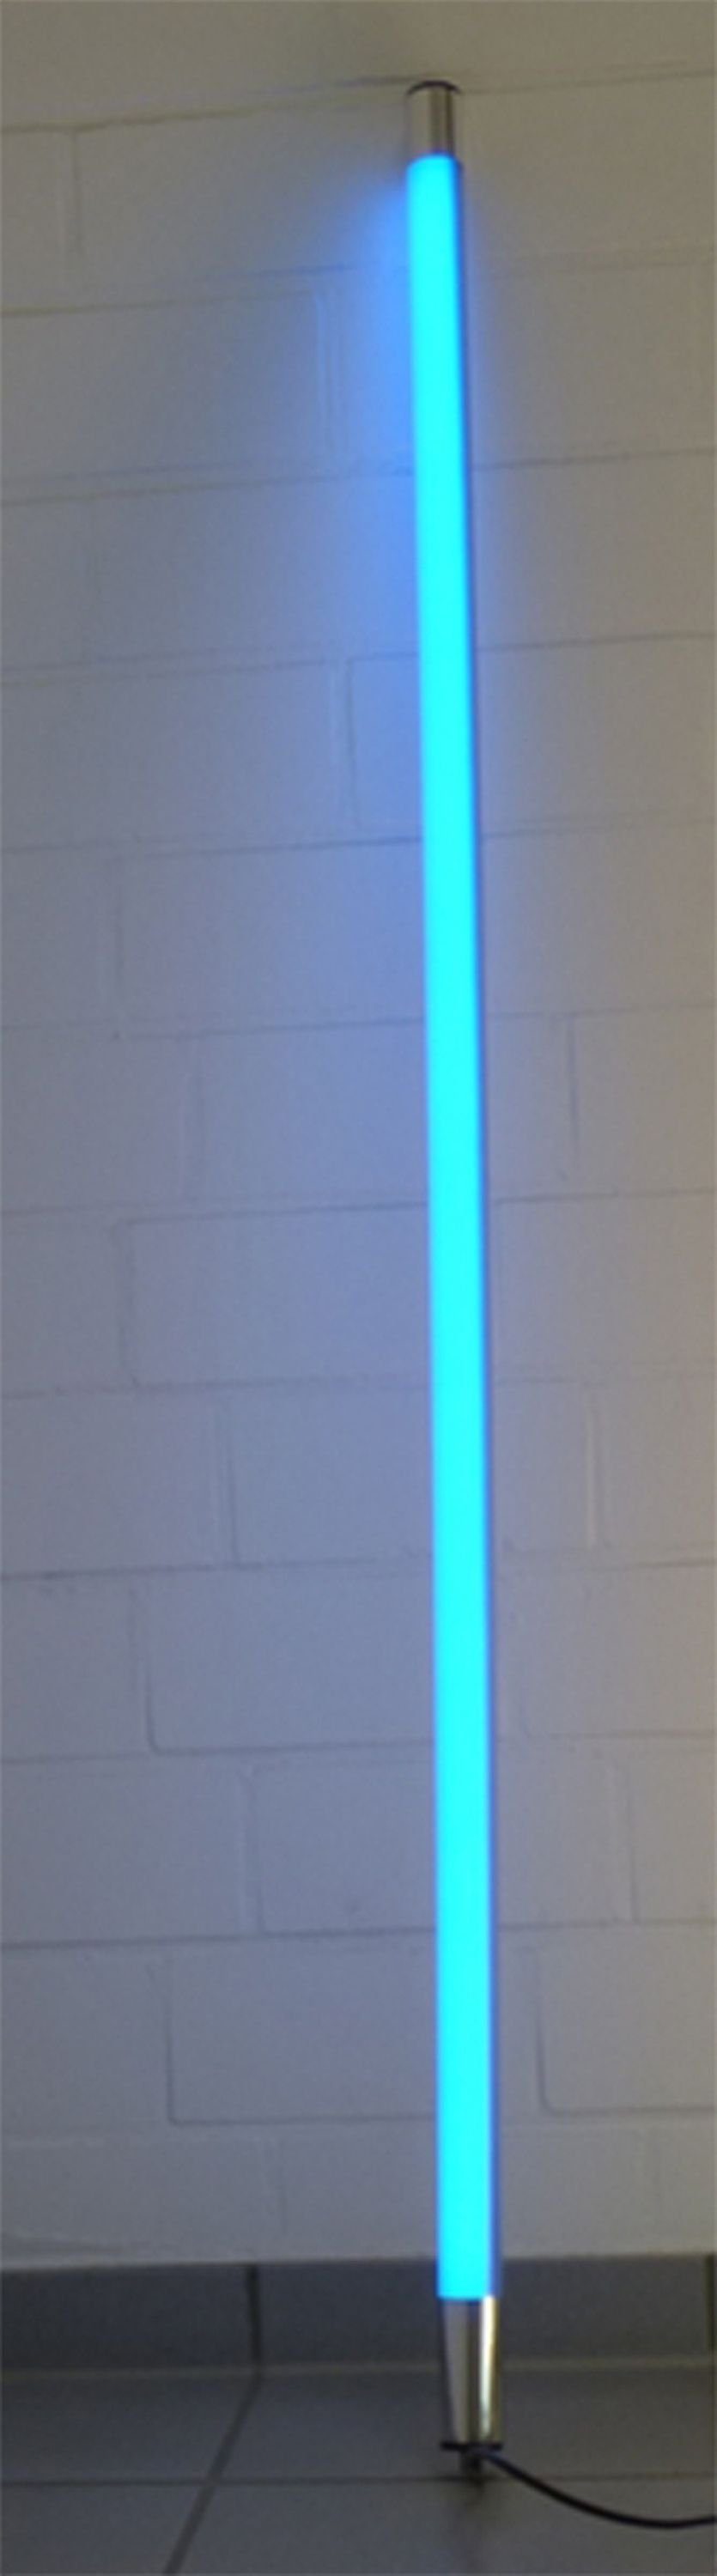 XENON LED Wandleuchte 8011 LED Leuchtstab Satiniert 1,23m Länge 2000 Lumen IP44 Außen Blau, LED Röhre T8, Xenon Blau | Wandleuchten